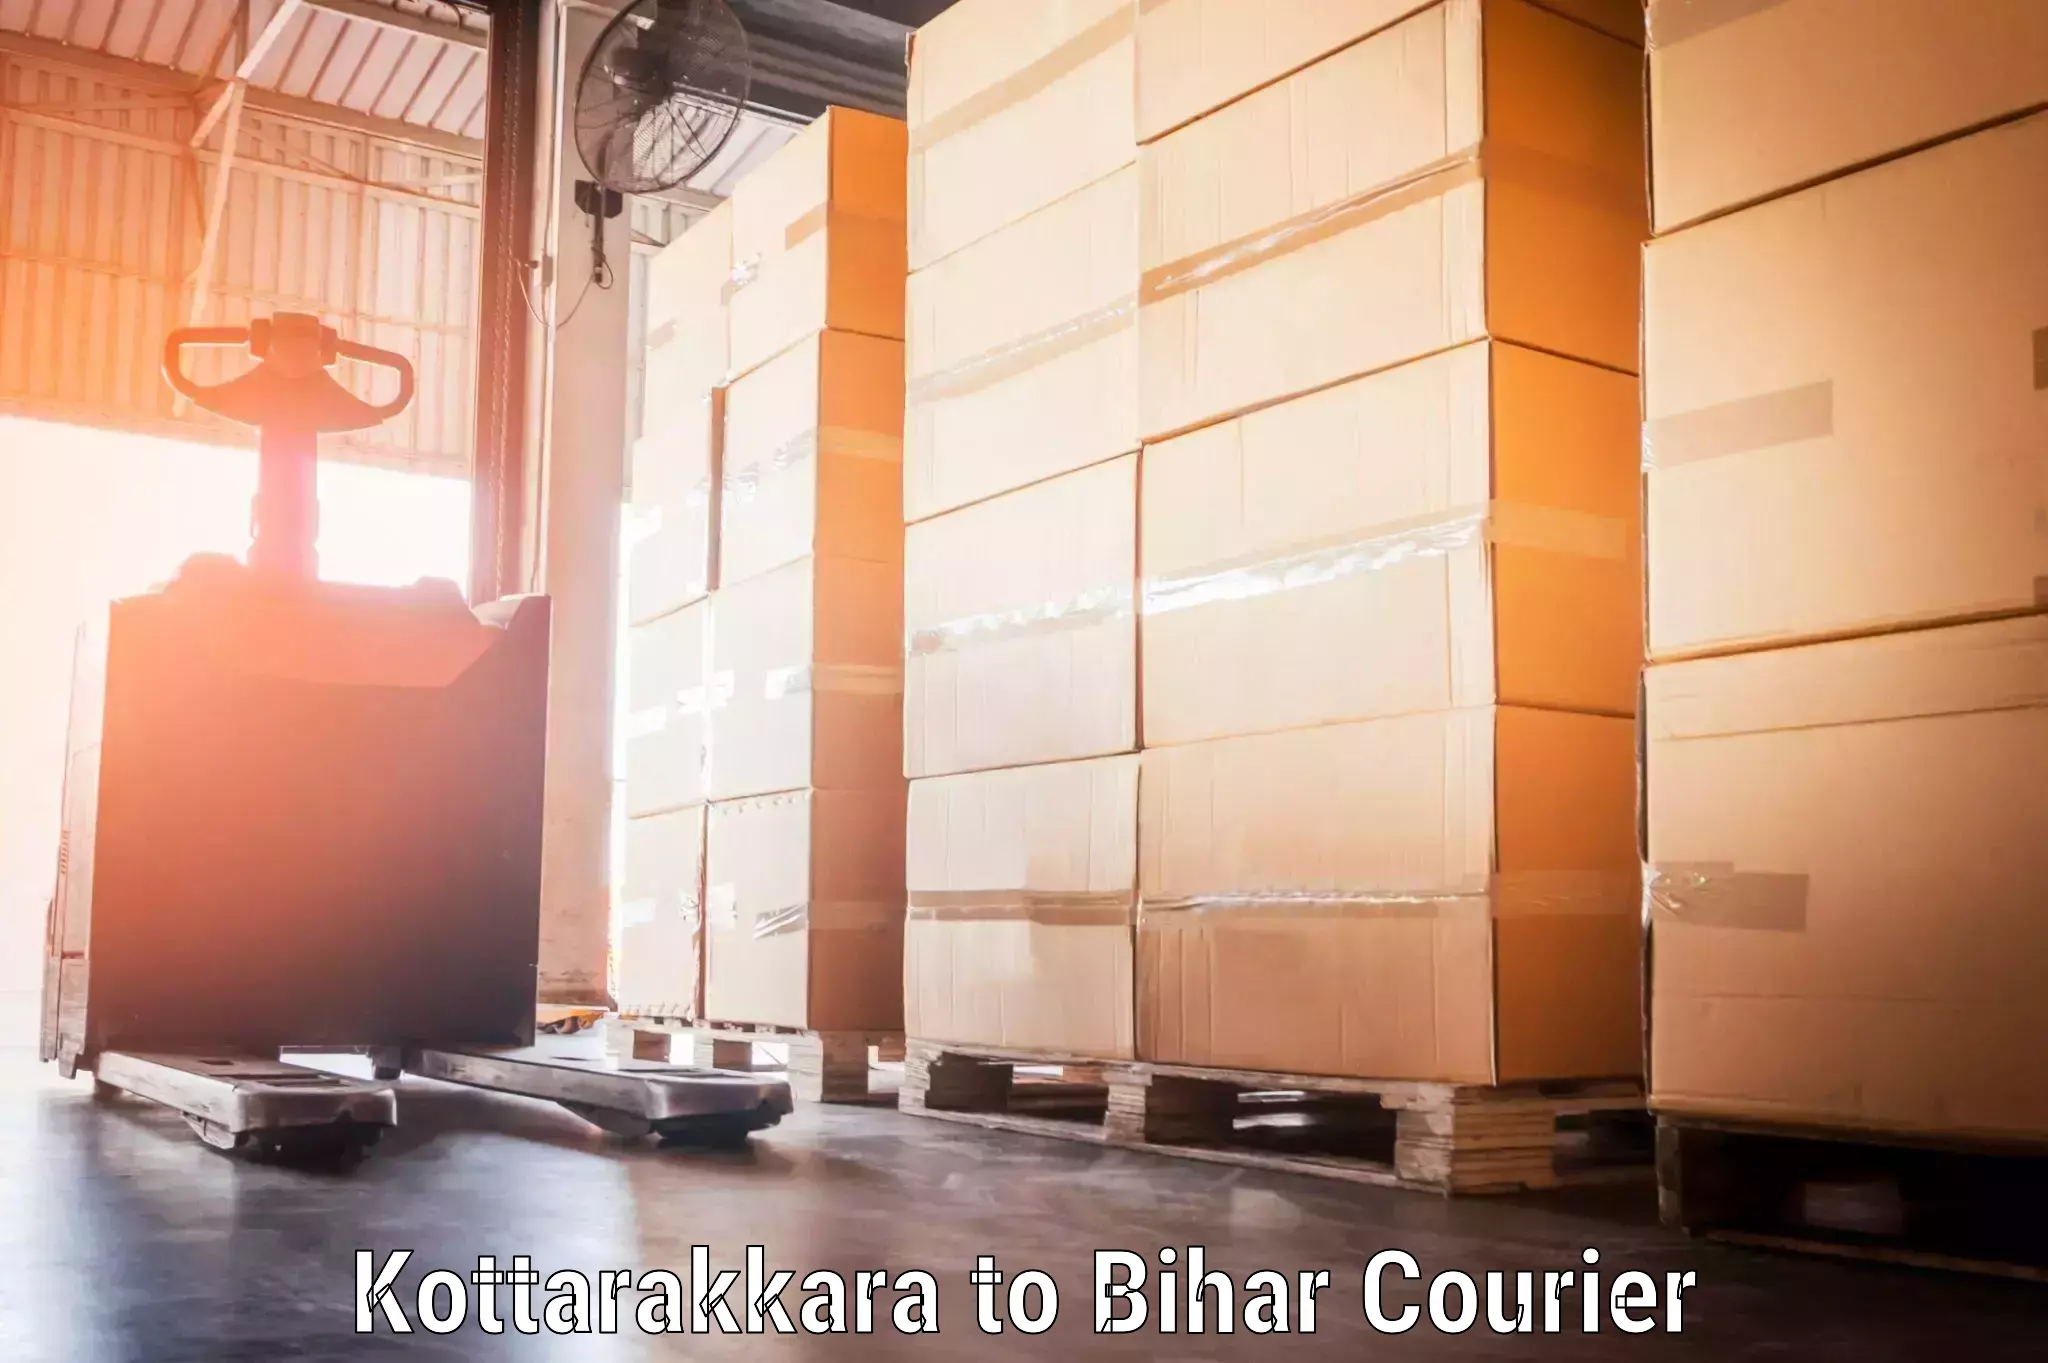 Luggage delivery app Kottarakkara to Baisi